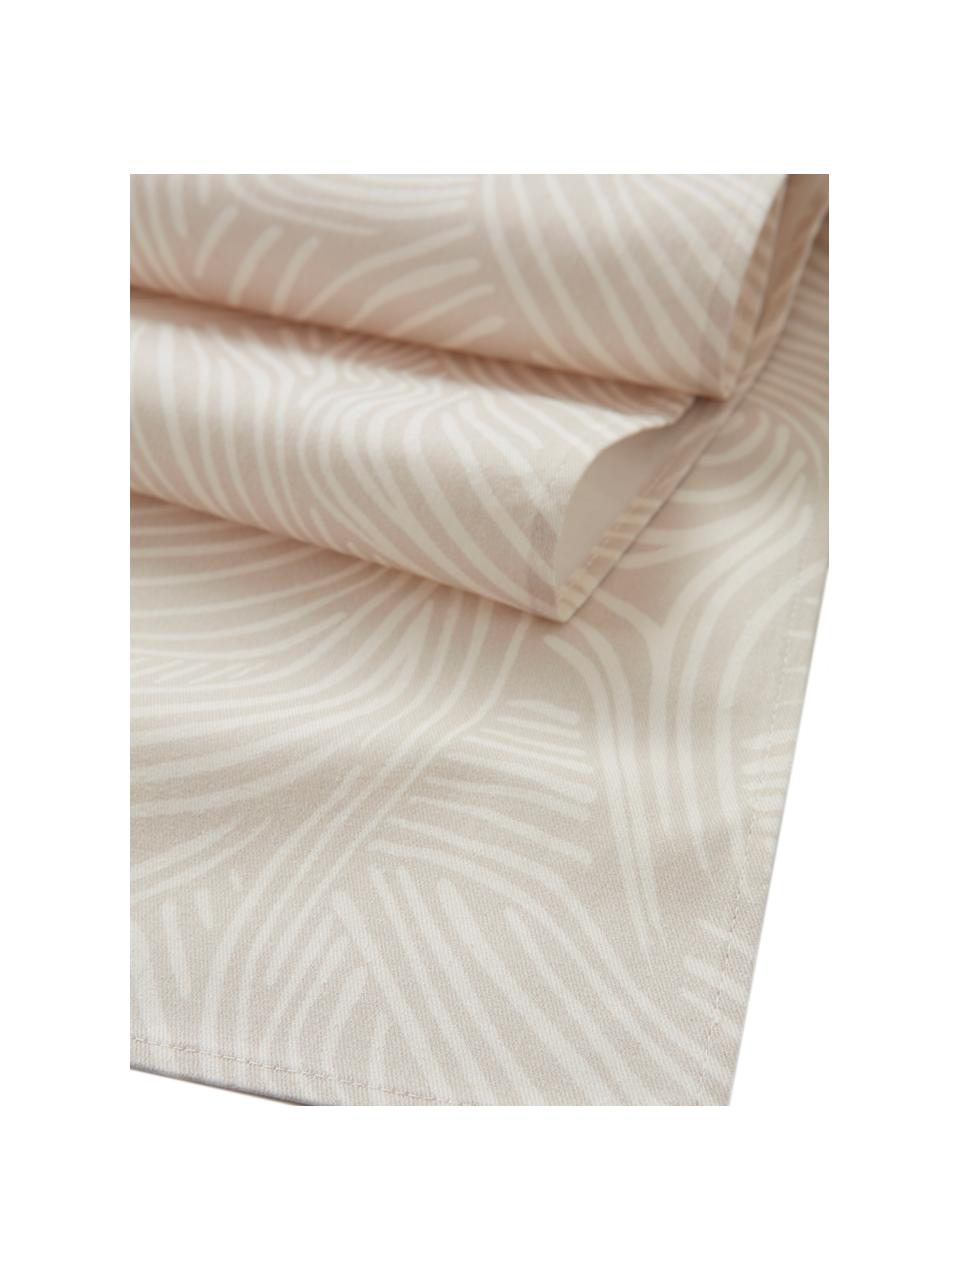 Camino de mesa de algodón Vida, 100% algodón, Beige, An 40 x L 140 cm